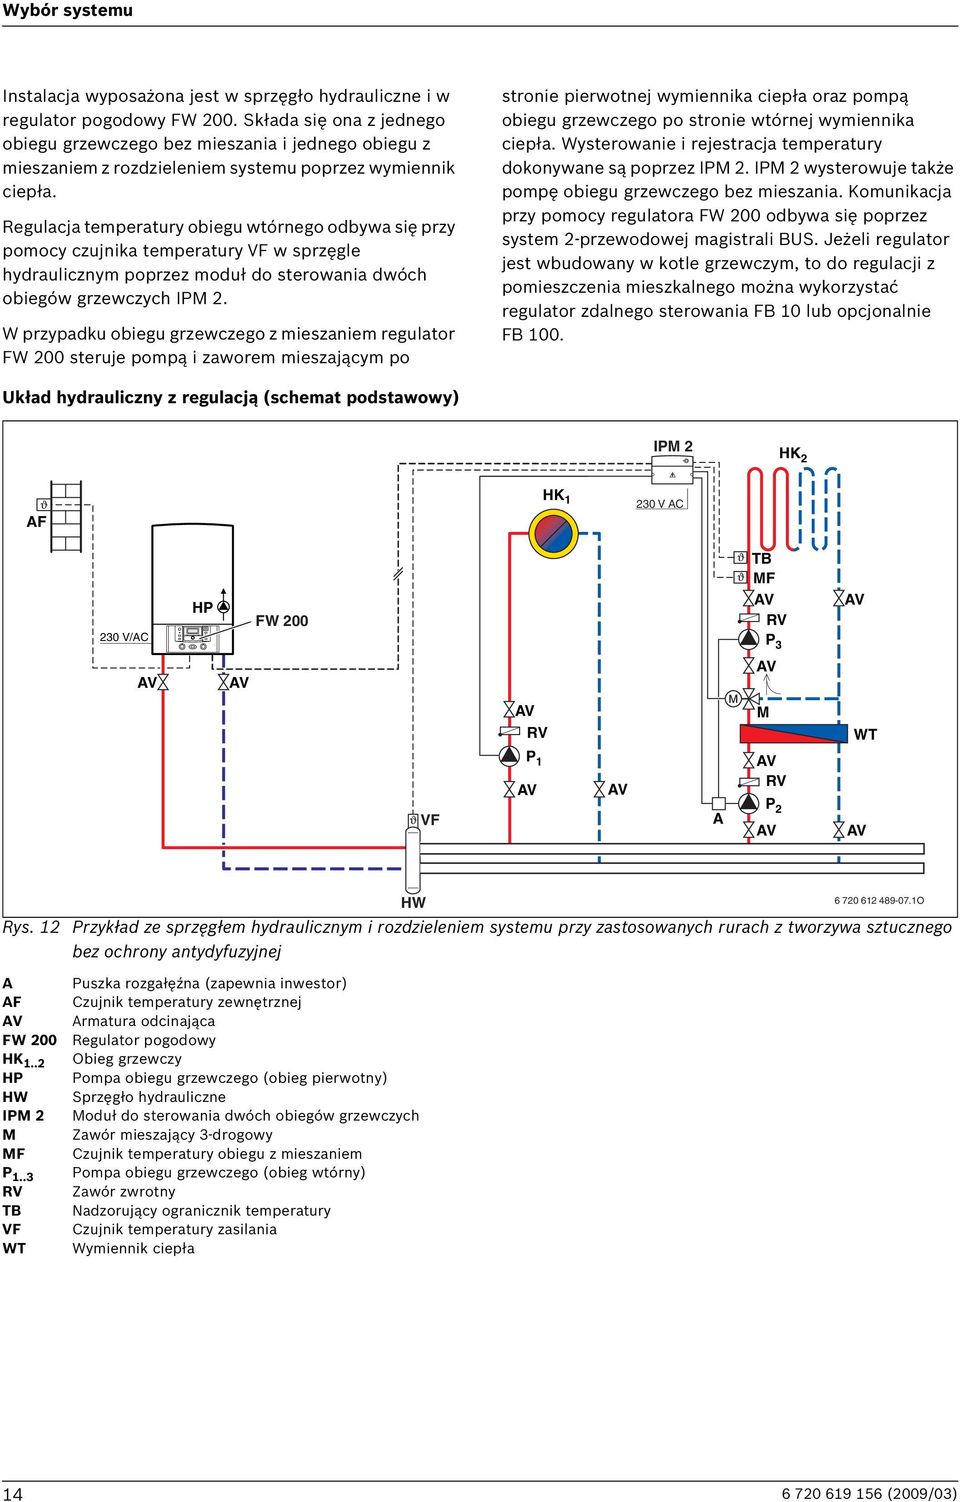 Regulacja temperatury obiegu wtórnego odbywa się przy pomocy czujnika temperatury VF w sprzęgle hydraulicznym poprzez moduł do sterowania dwóch obiegów grzewczych IPM 2.